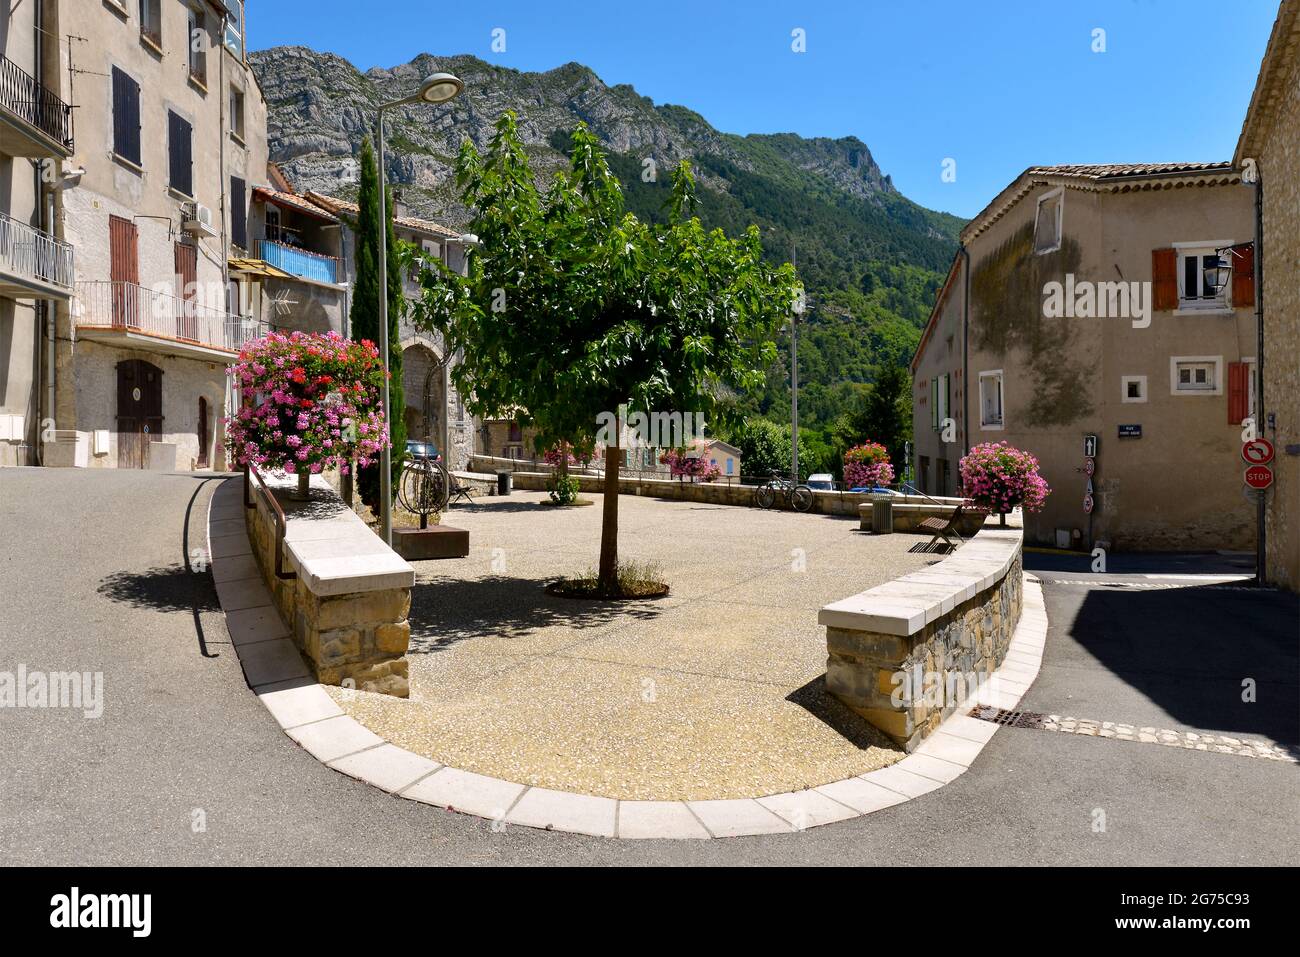 Côte e fiori di geranio a Sisteron, un comune nel dipartimento delle Alpi dell'alta Provenza nella regione Provenza-Alpi-Costa Azzurra in Francia Foto Stock